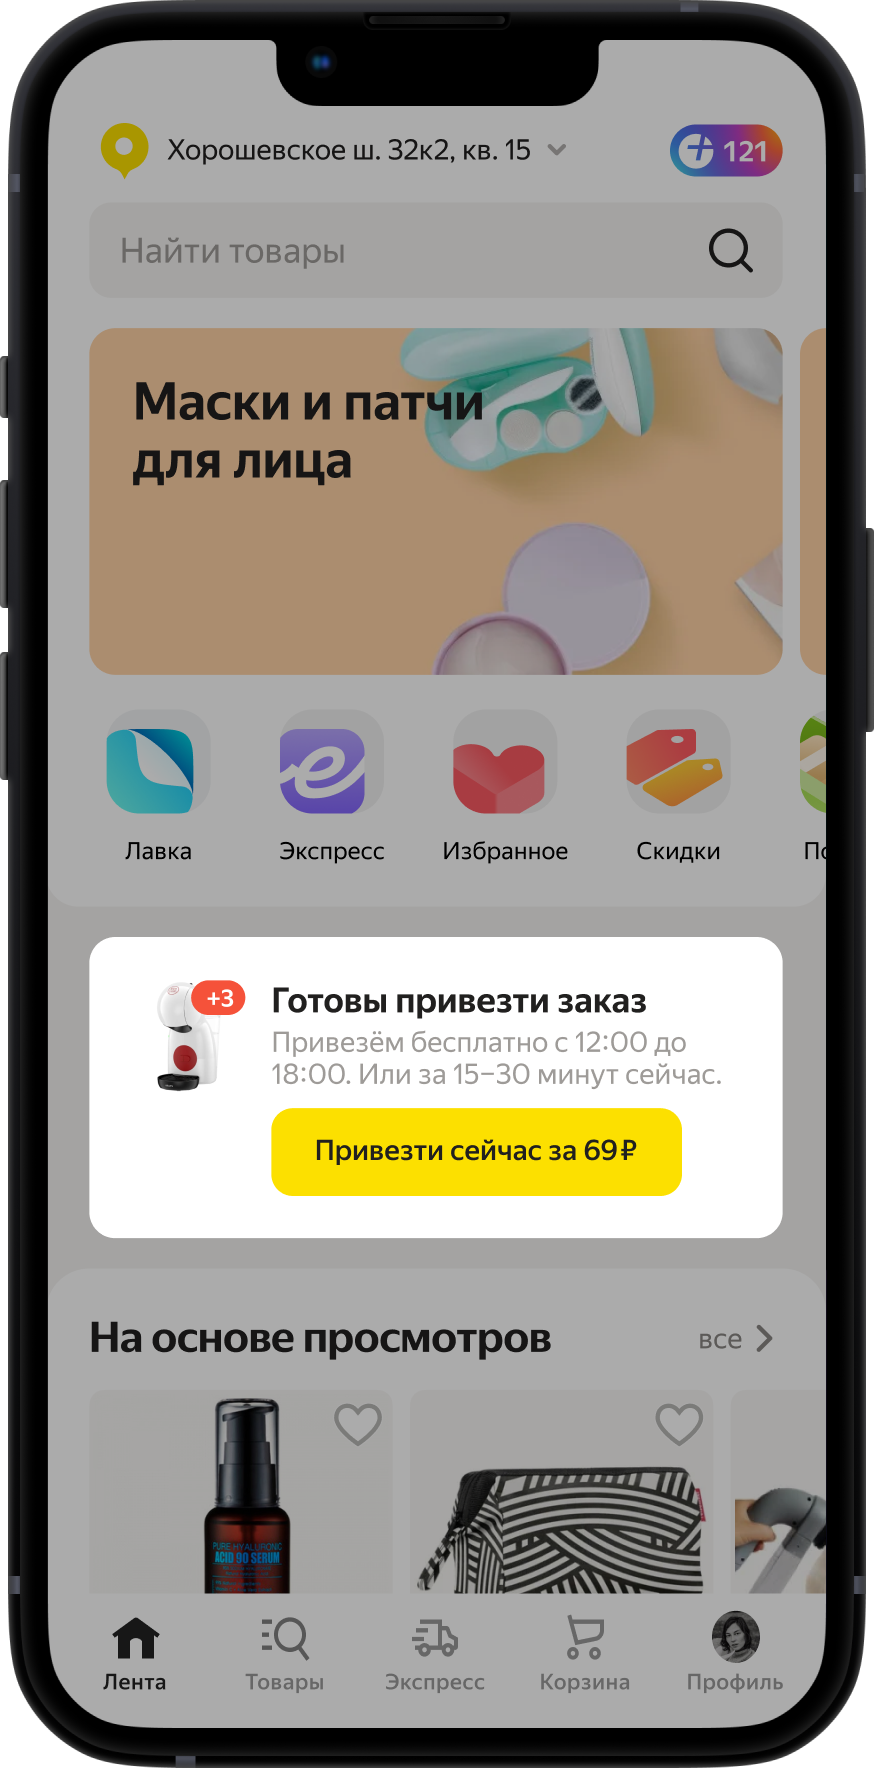 «Яндекс Маркет»: Покупатели смогут сменить тип доставки в день получения заказа